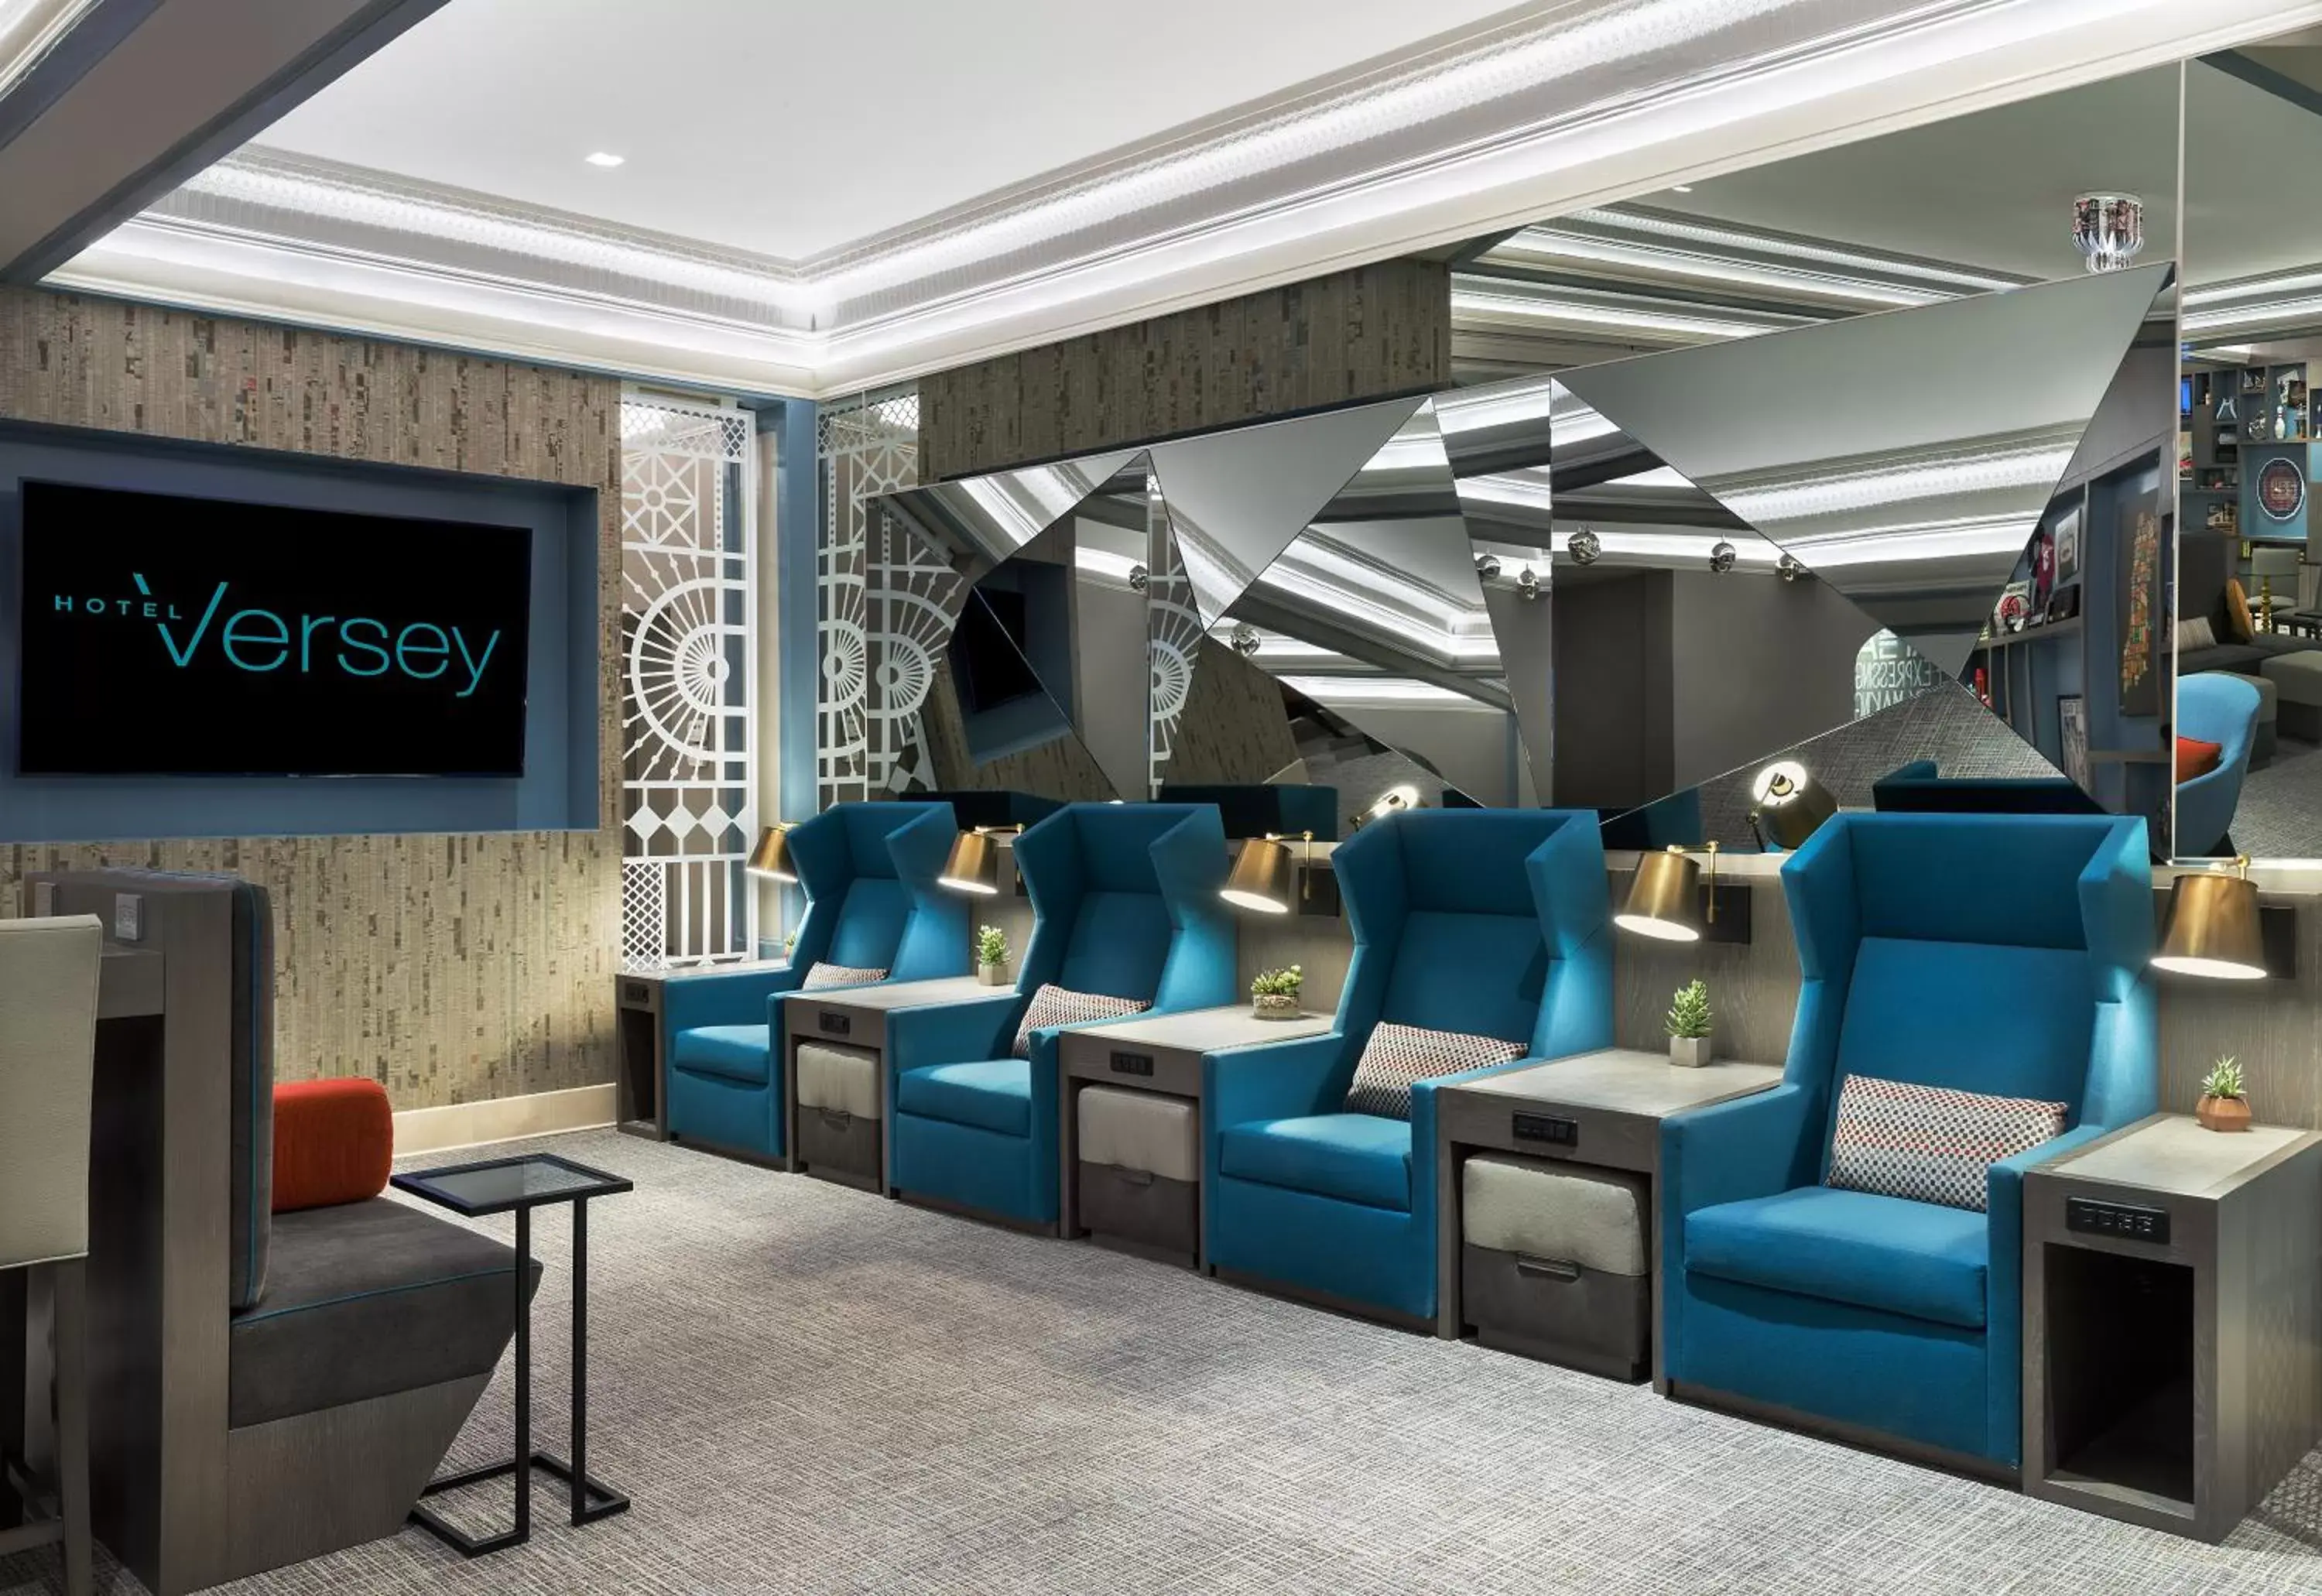 Lobby or reception, Lobby/Reception in Hotel Versey Days Inn by Wyndham Chicago